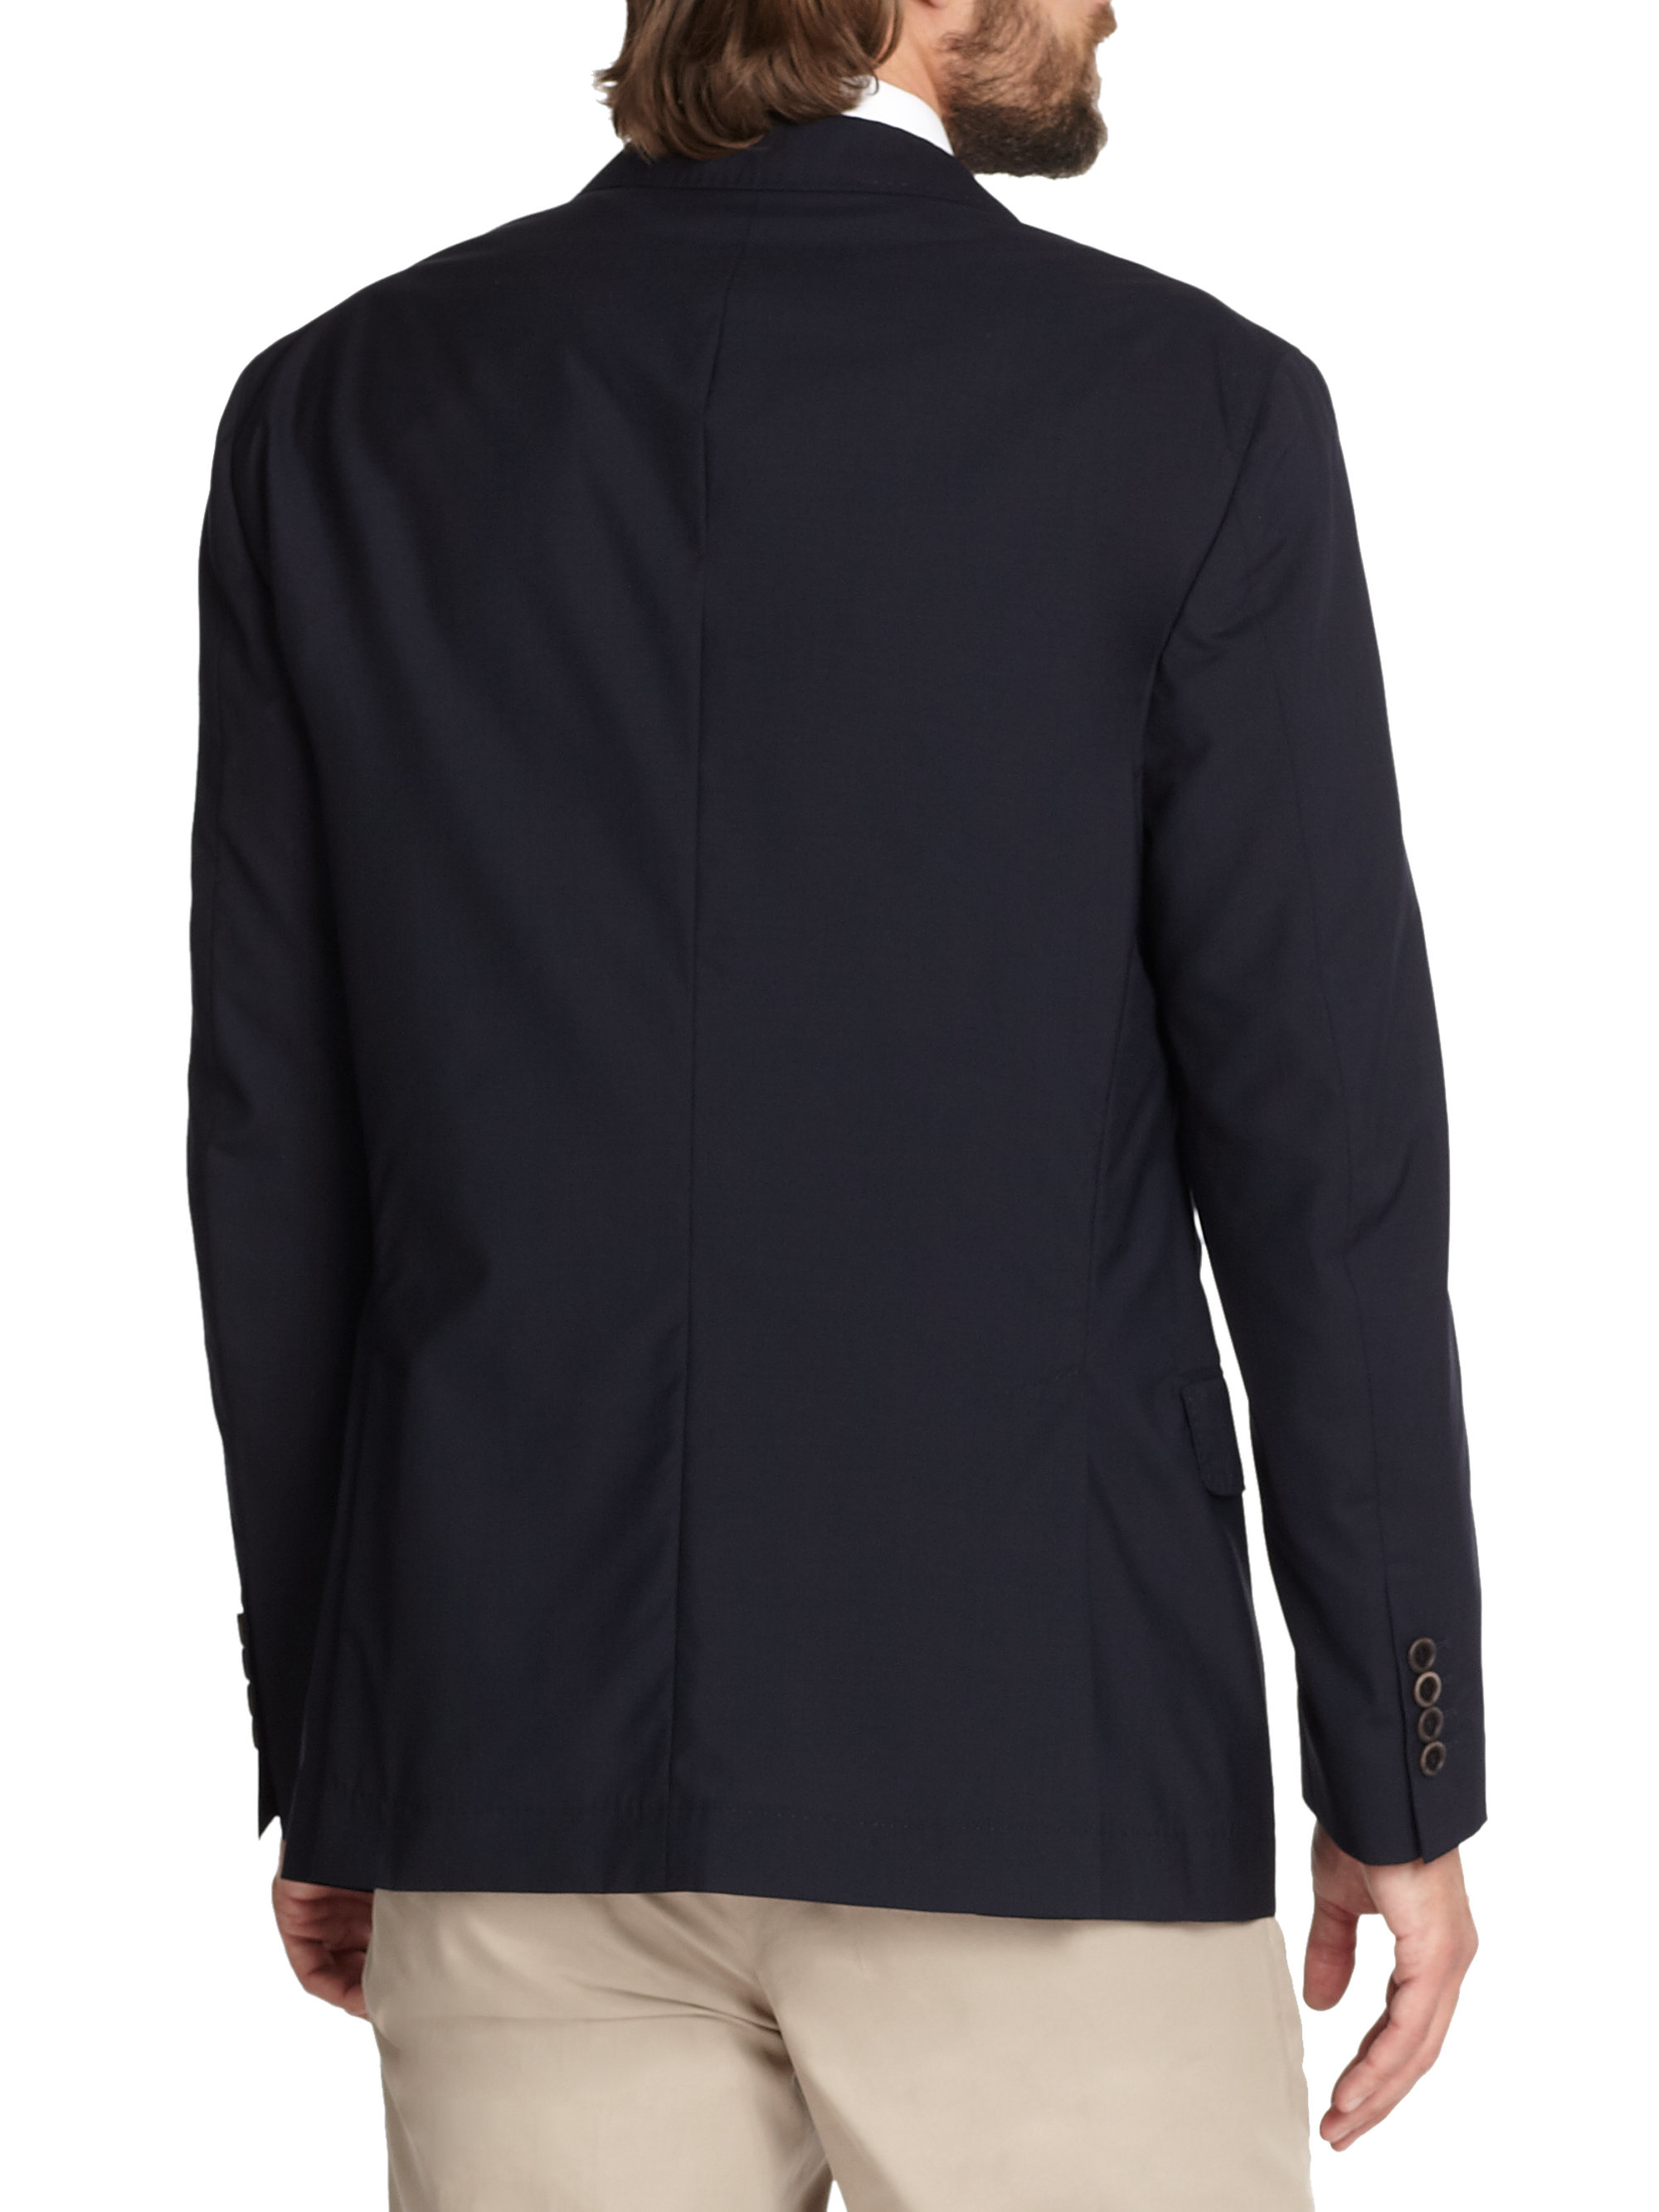 Brunello Cucinelli Wool/silk Travel Blazer in Navy (Blue) for Men - Lyst